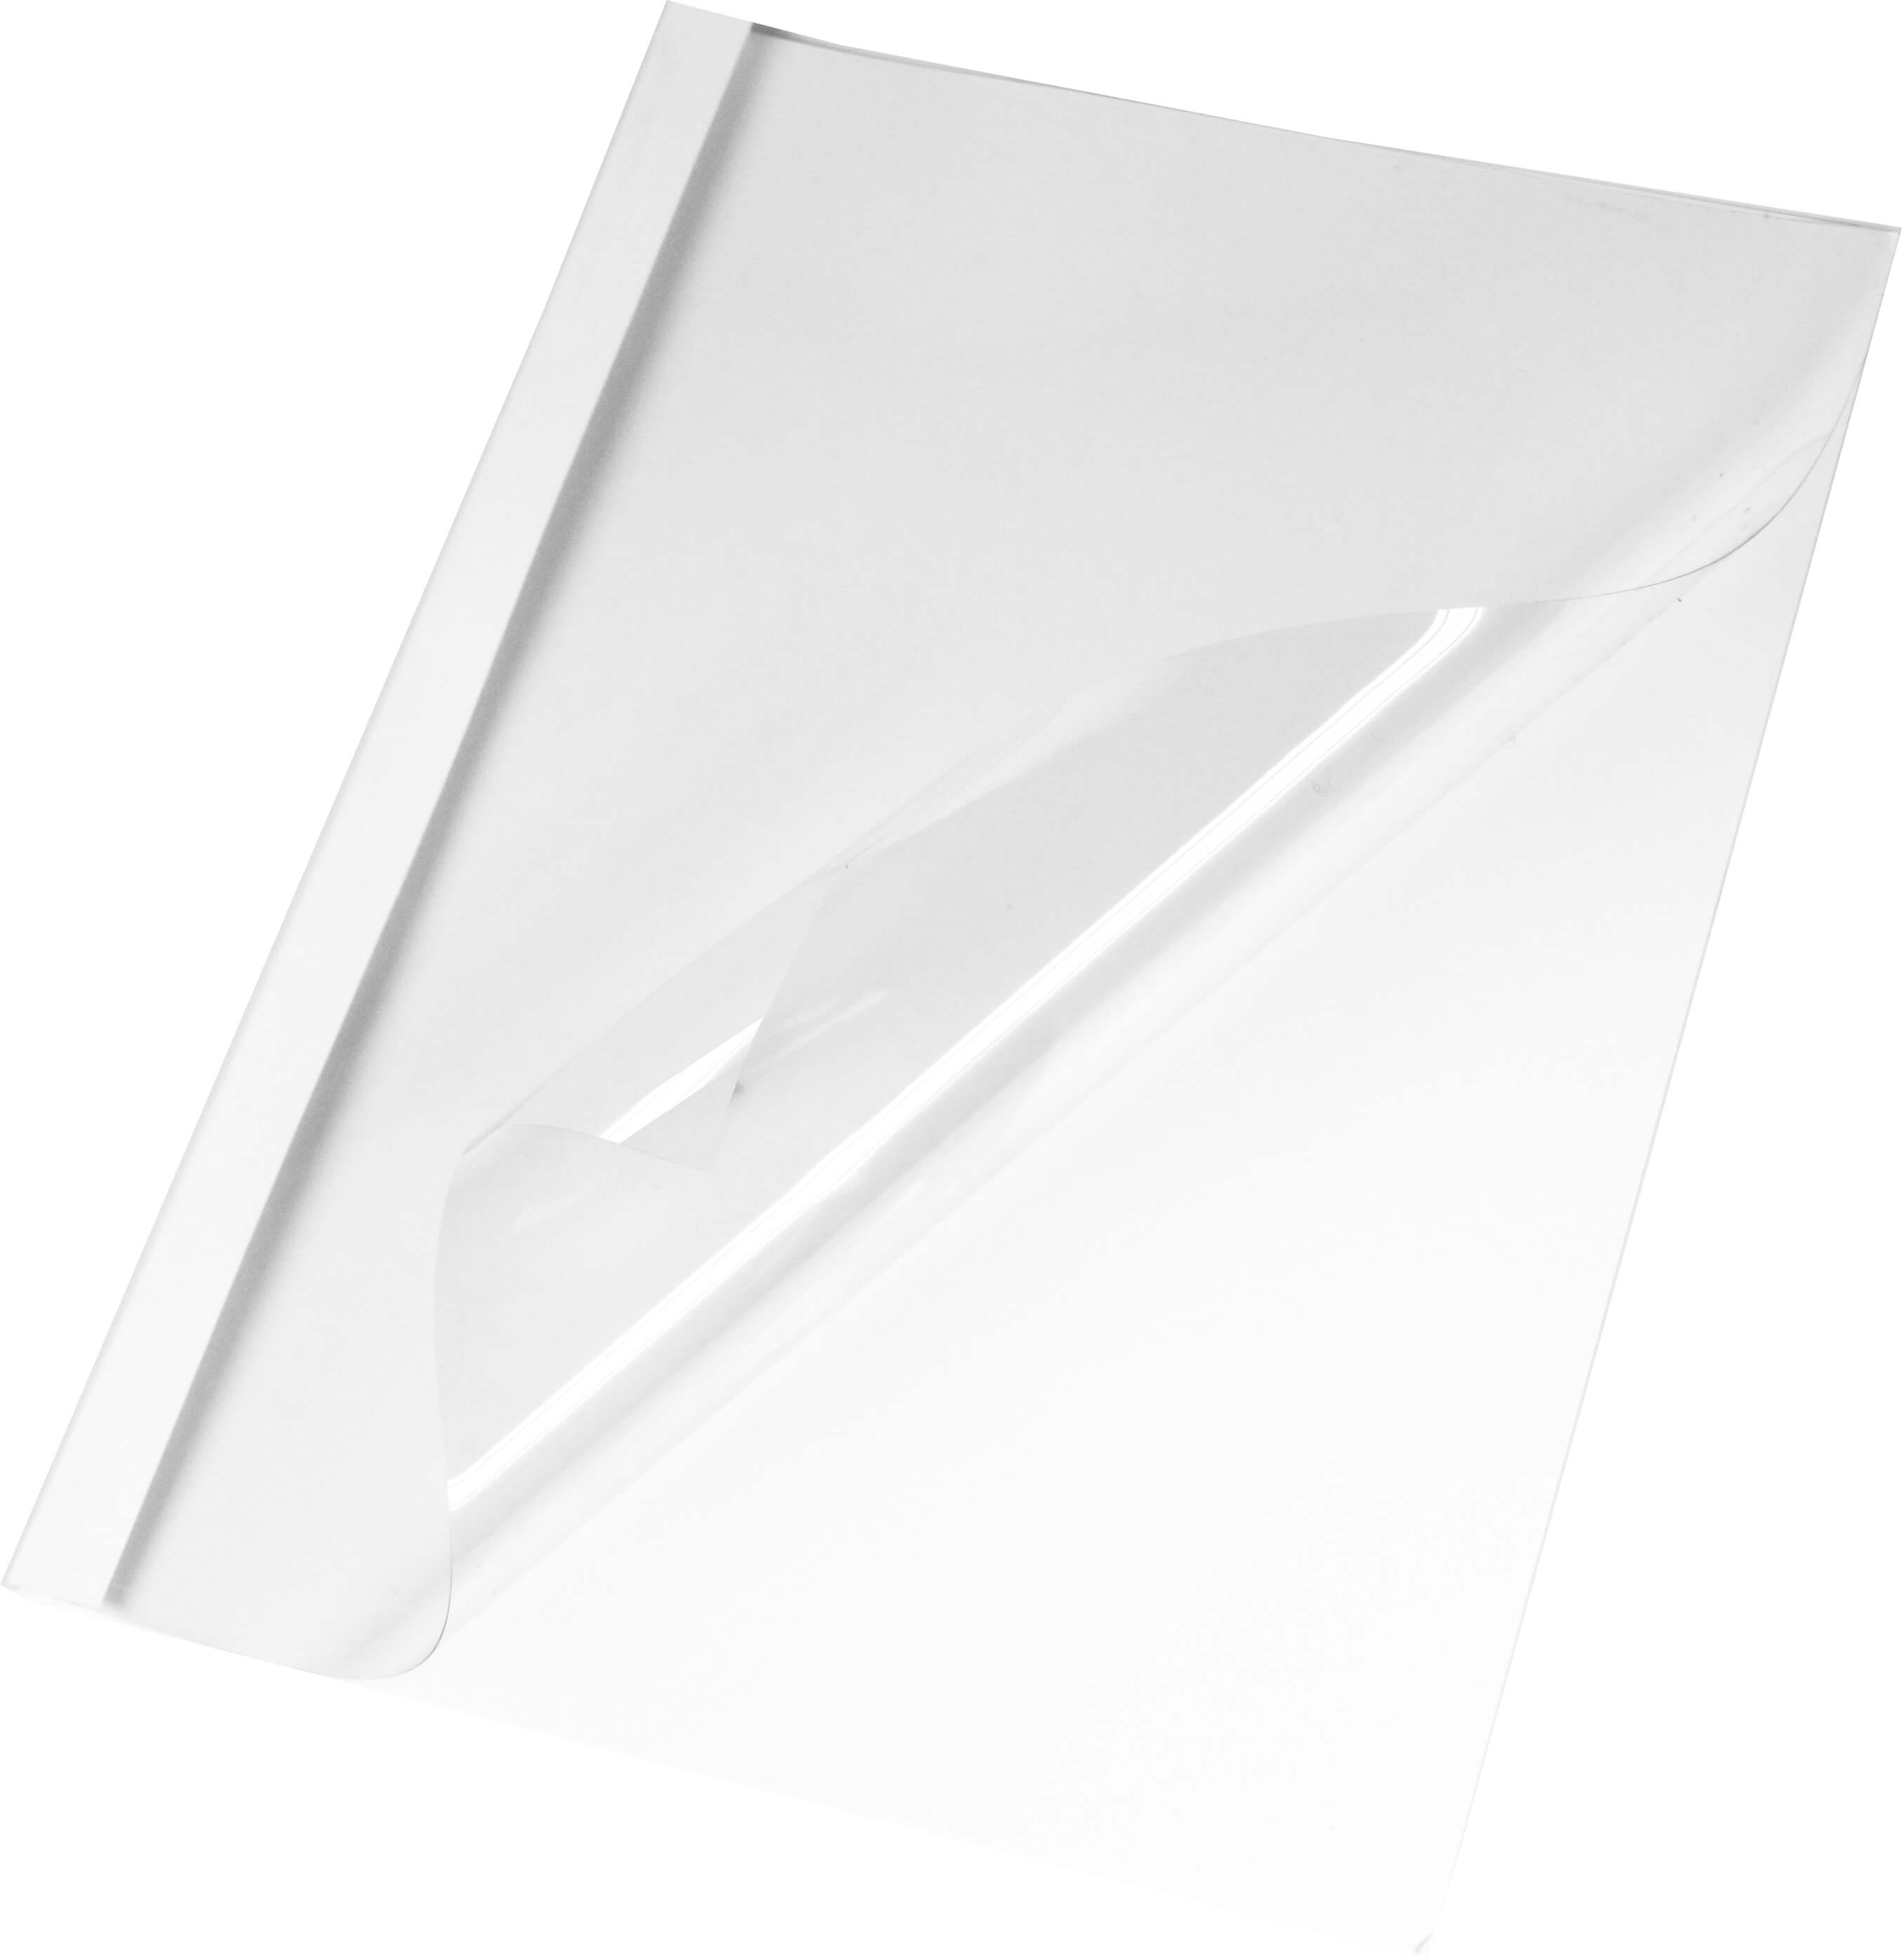 Thermobindemappe Lederstruktur in der Farbe weiß 1,5 mm | Bestnr. LMG-BMDL-WS-R1.5